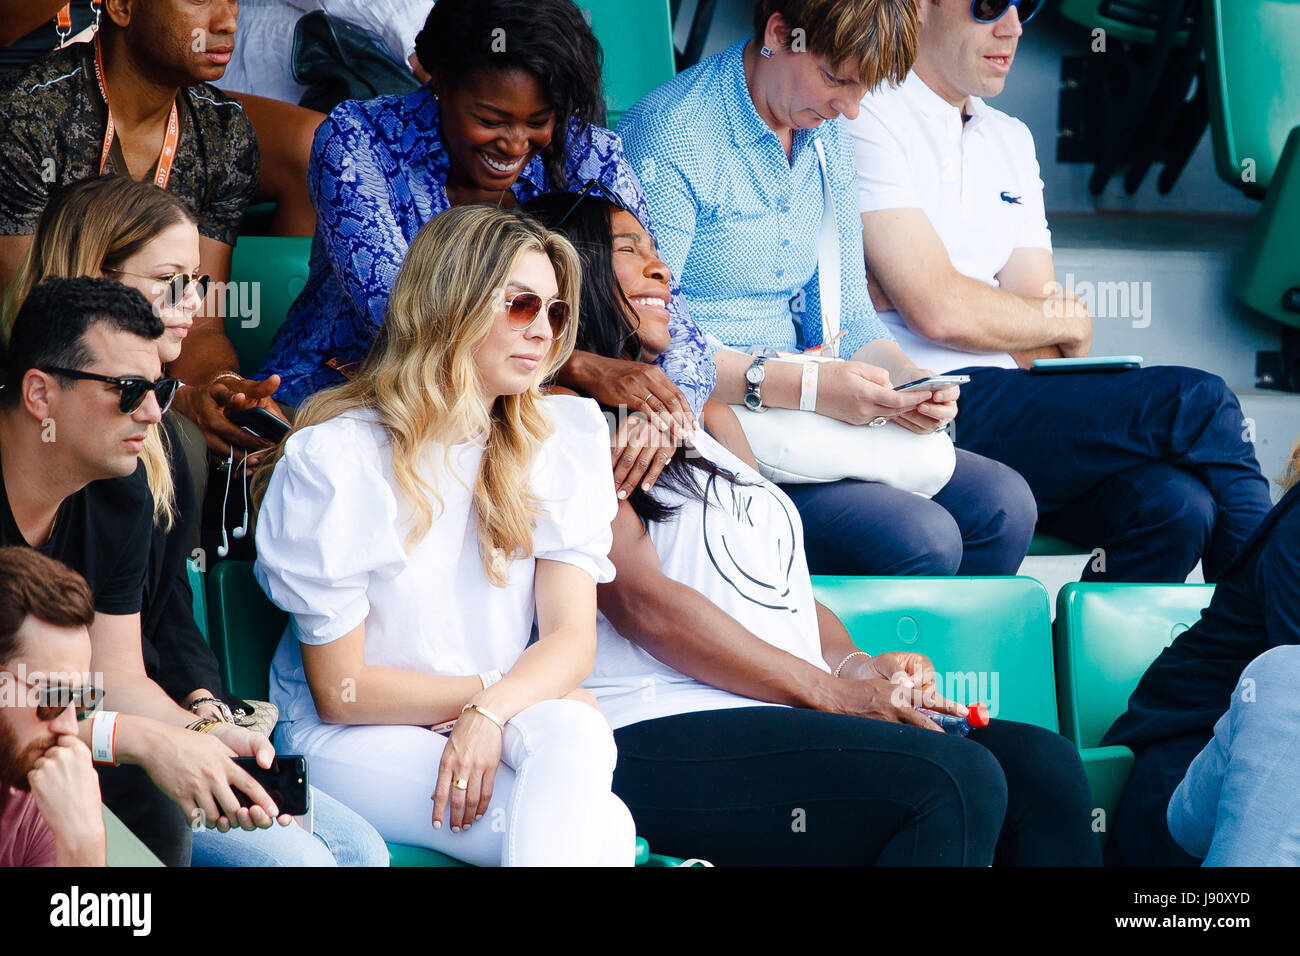 Paris, France, 31 mai 2017 : Serena Williams sourit pendant ses sœurs deuxième tour à l'Open de France de tennis 2017 à Roland Garros Paris. crédit : Frank molter/Alamy live news Banque D'Images